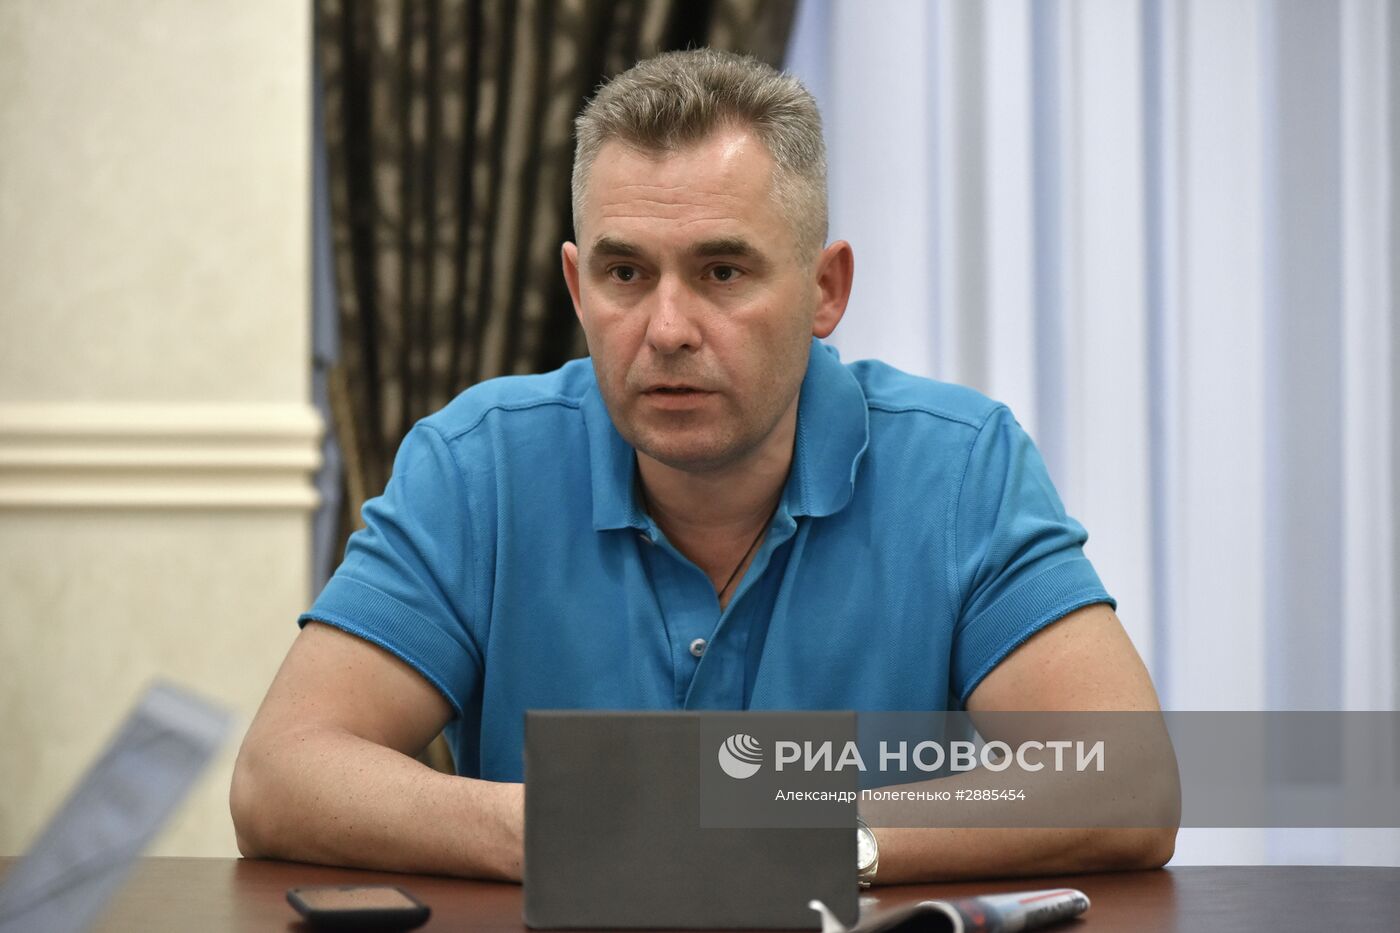 Уполномоченный по правам ребенка П. Астахов встретился с журналистами в аэропорту Симферополя